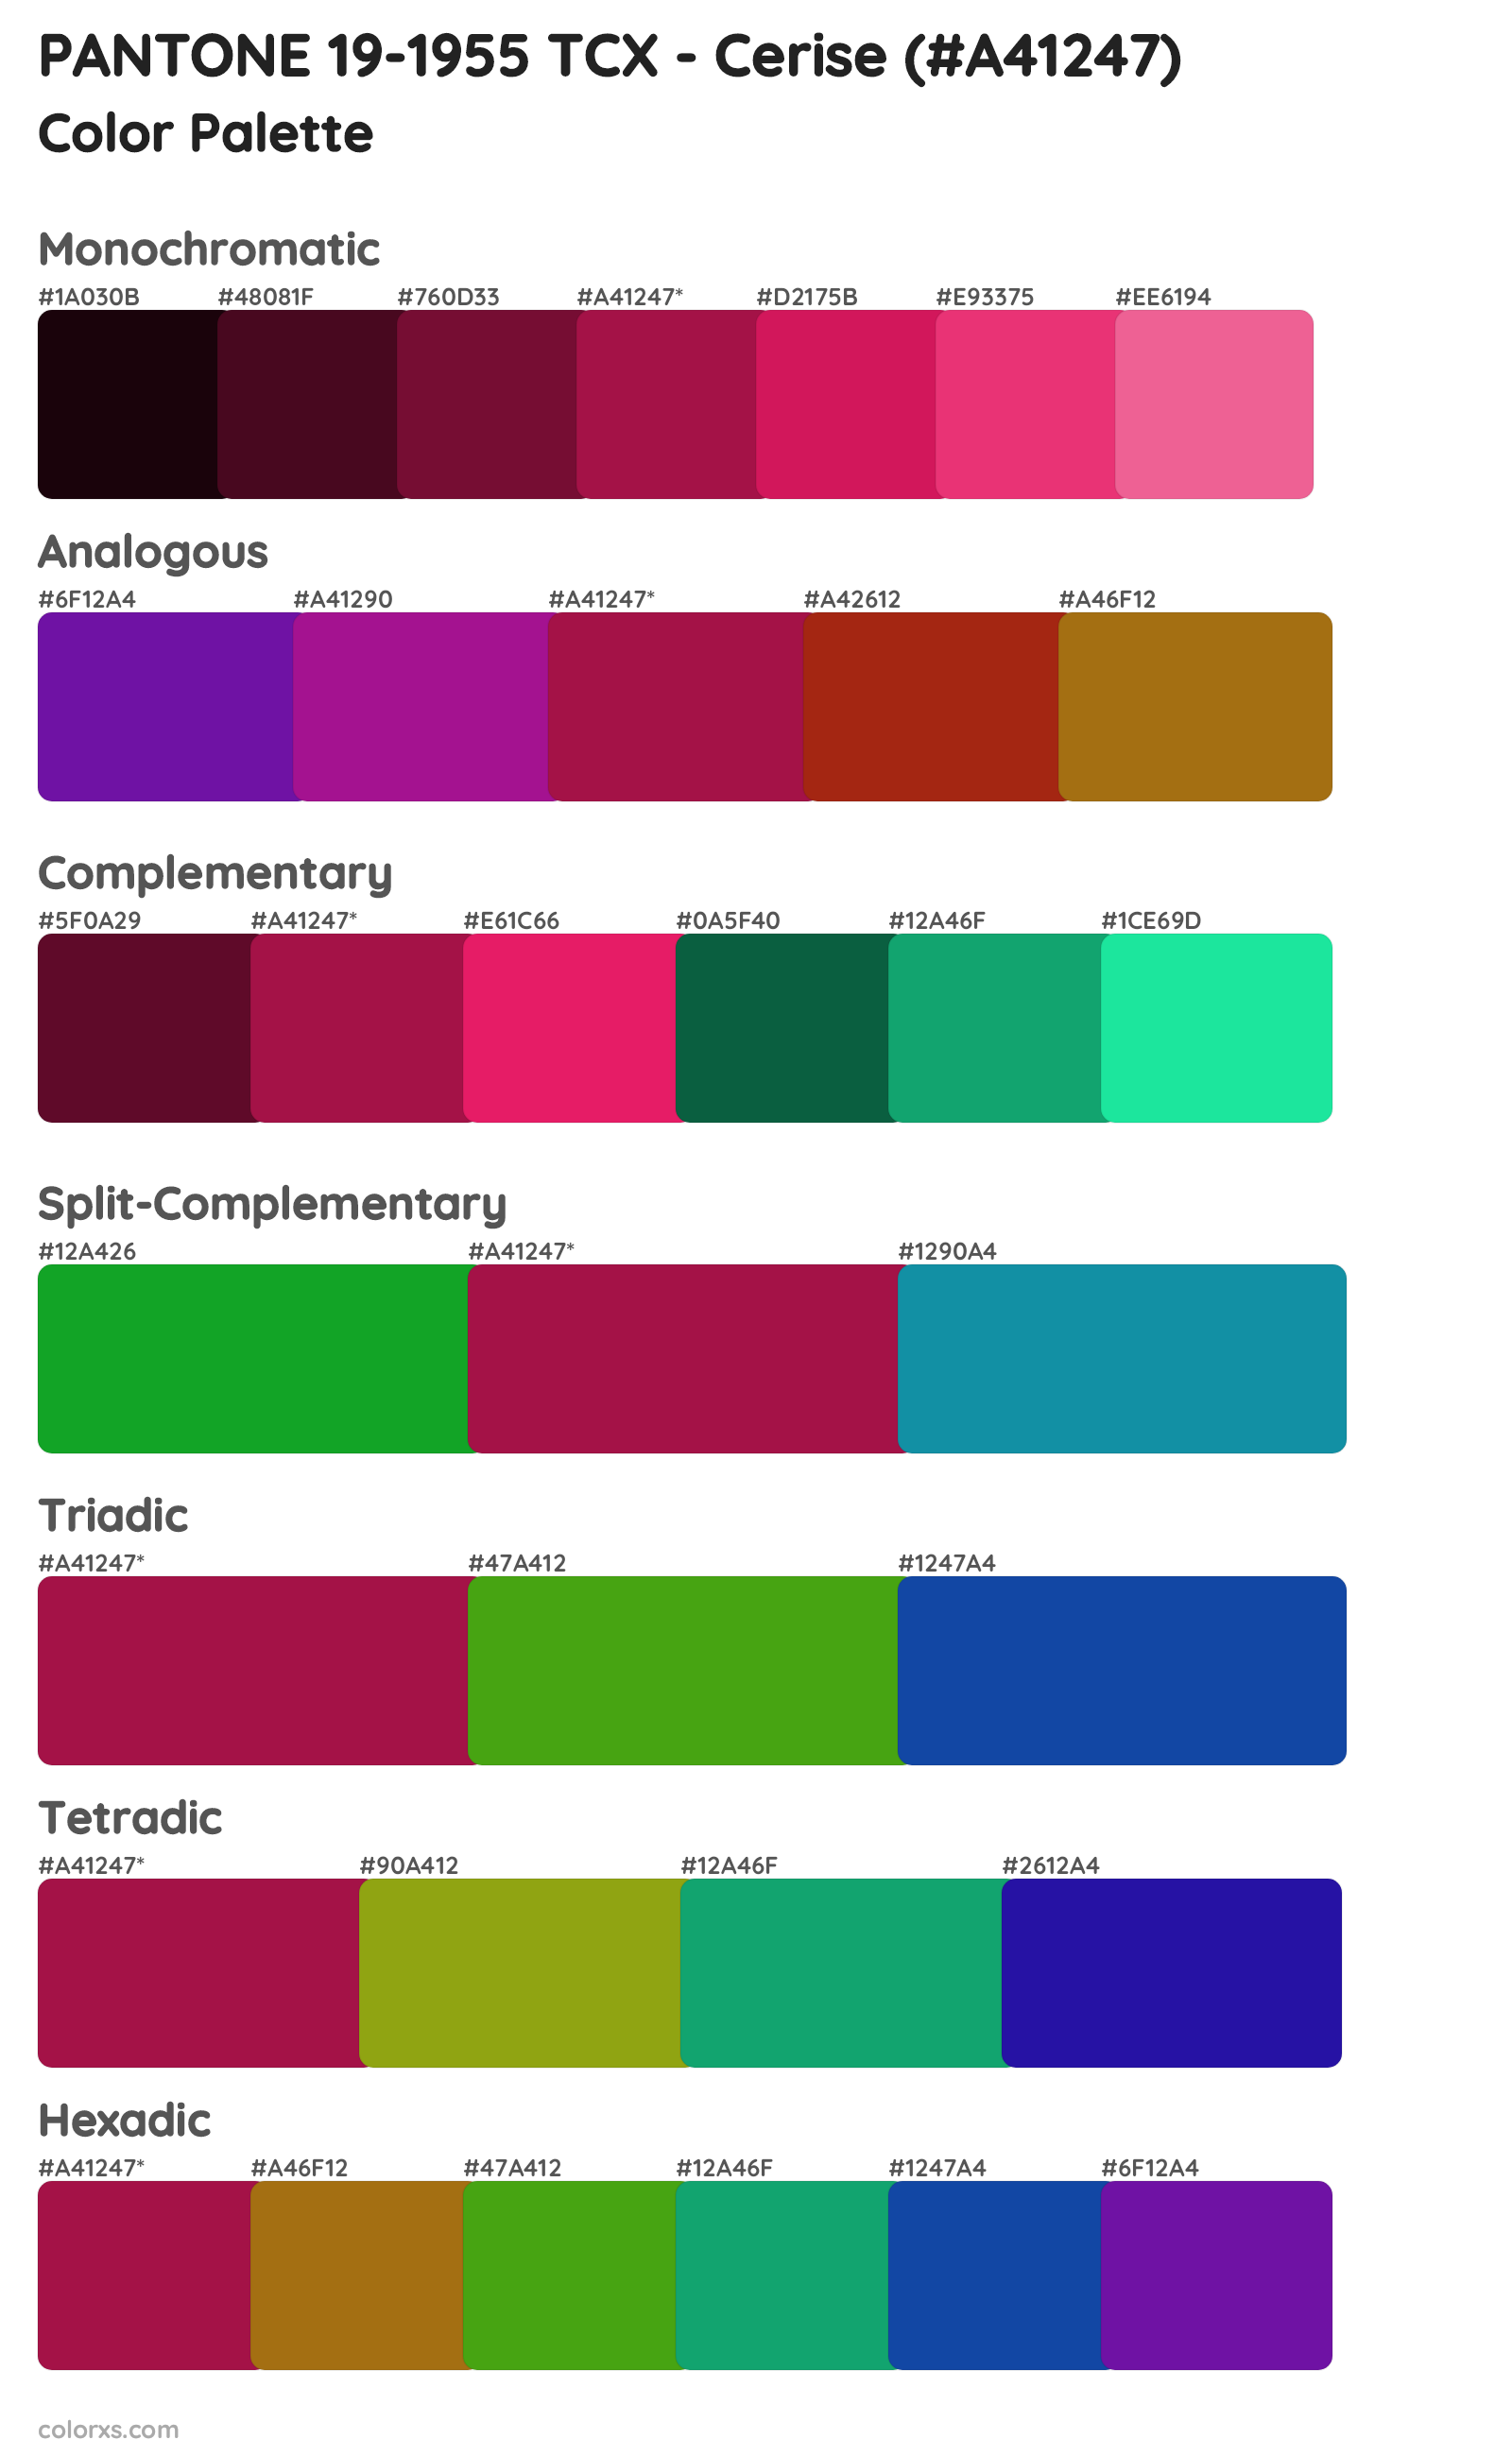 PANTONE 19-1955 TCX - Cerise Color Scheme Palettes